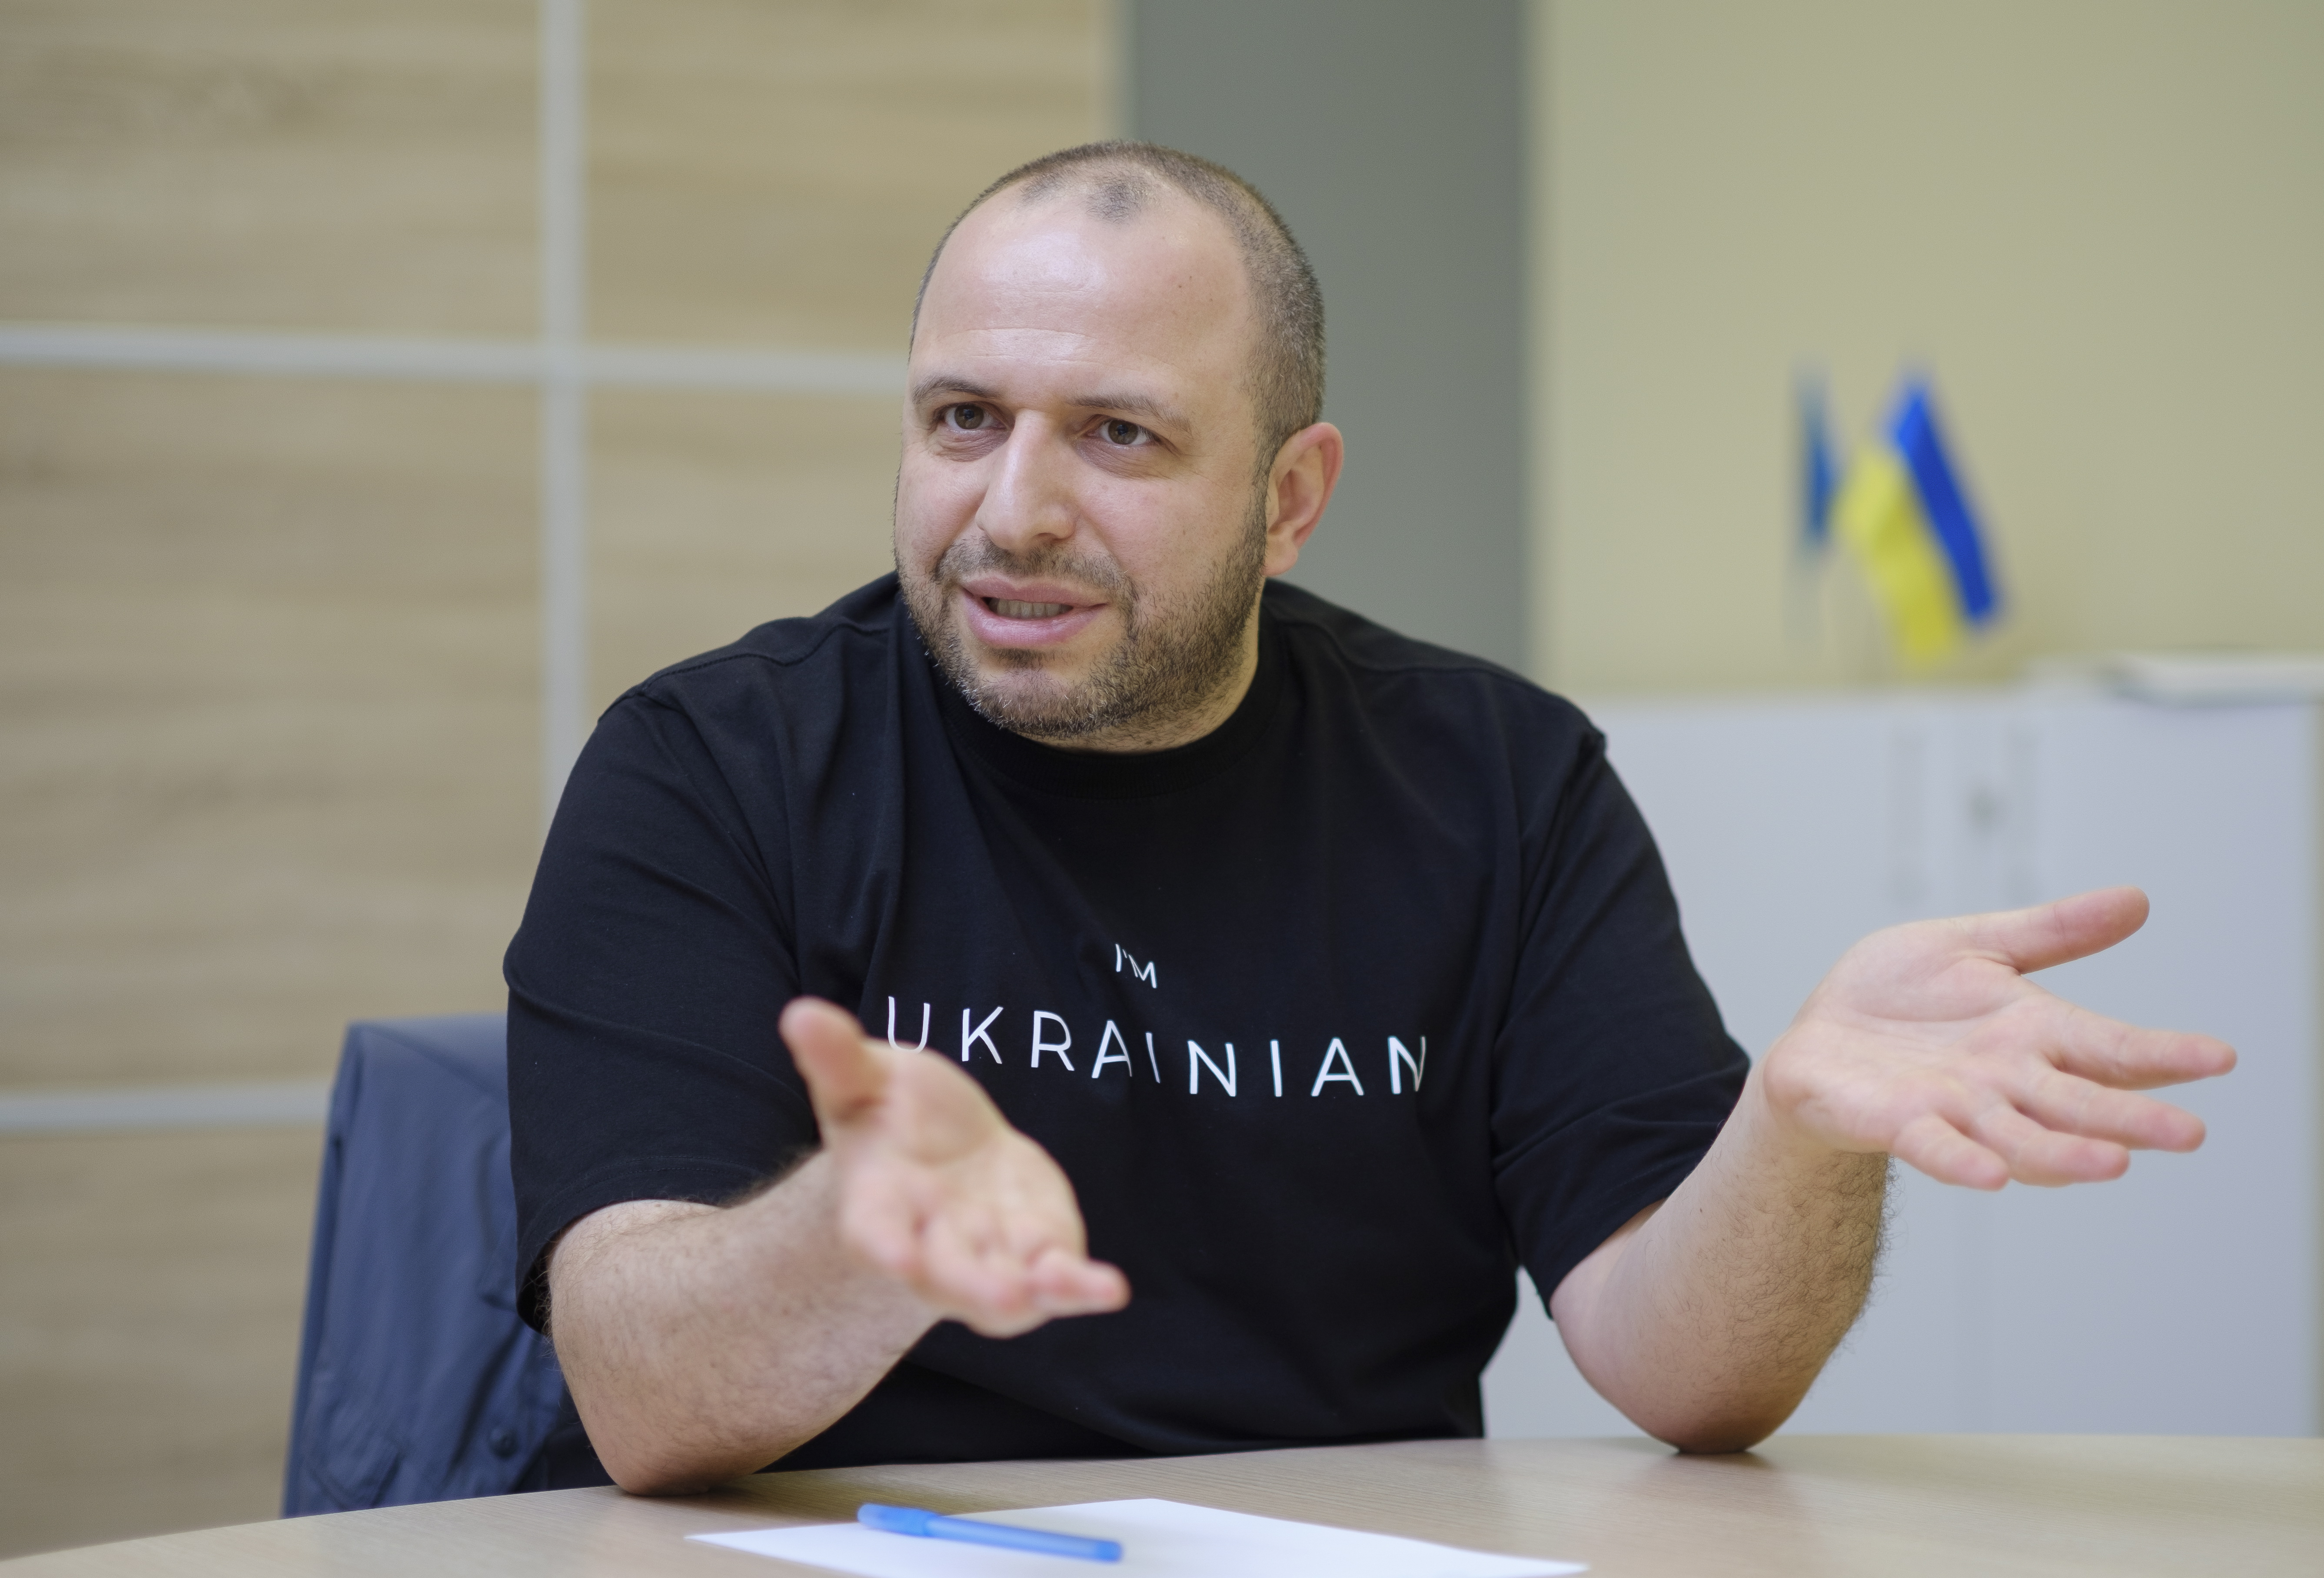 [新聞] 烏克蘭新防長烏梅洛夫 對俄談判高手